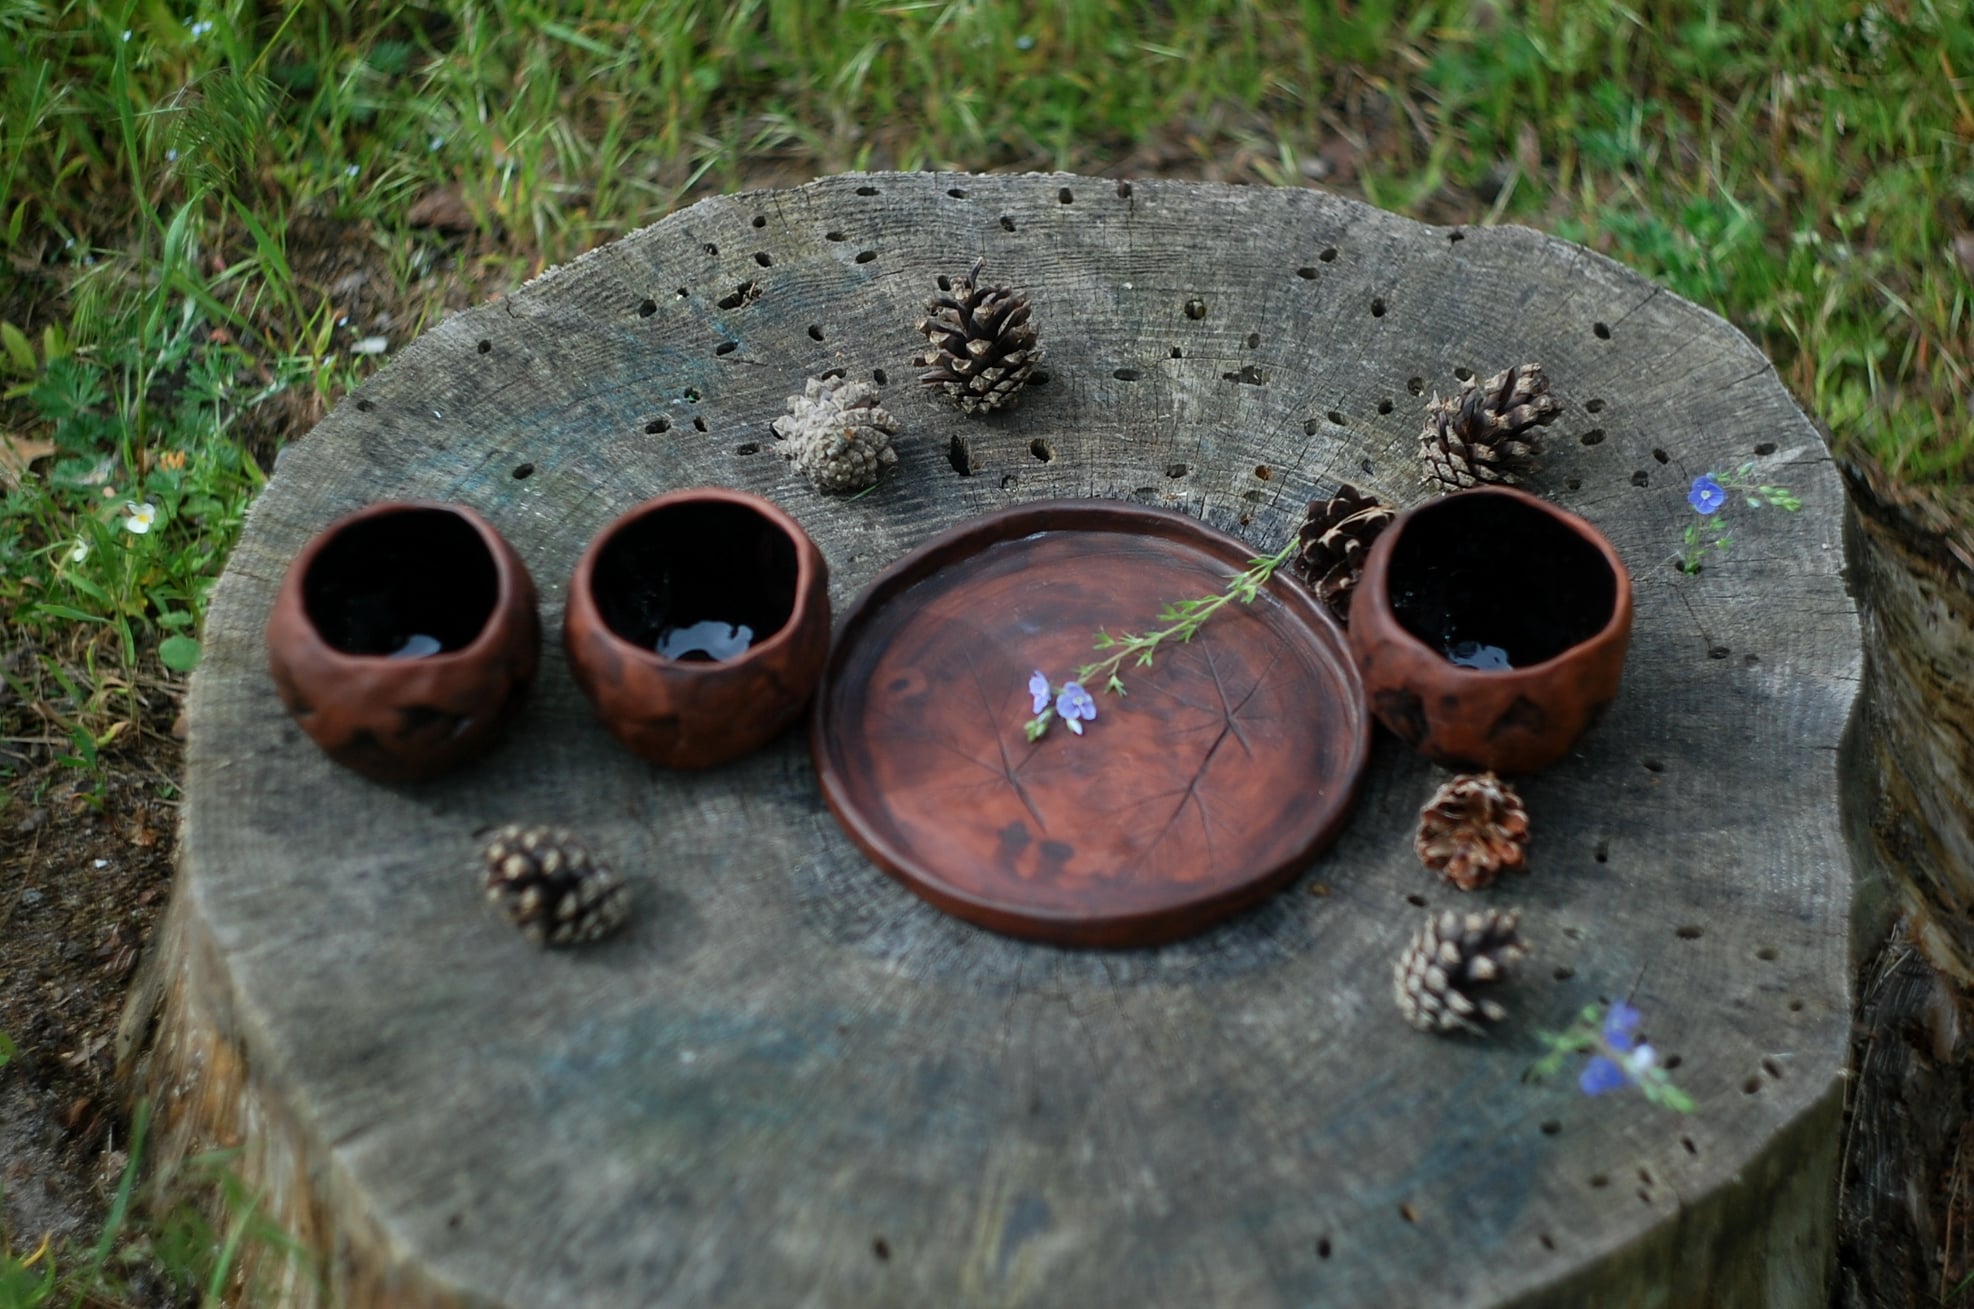 Stones pottery clay mug set